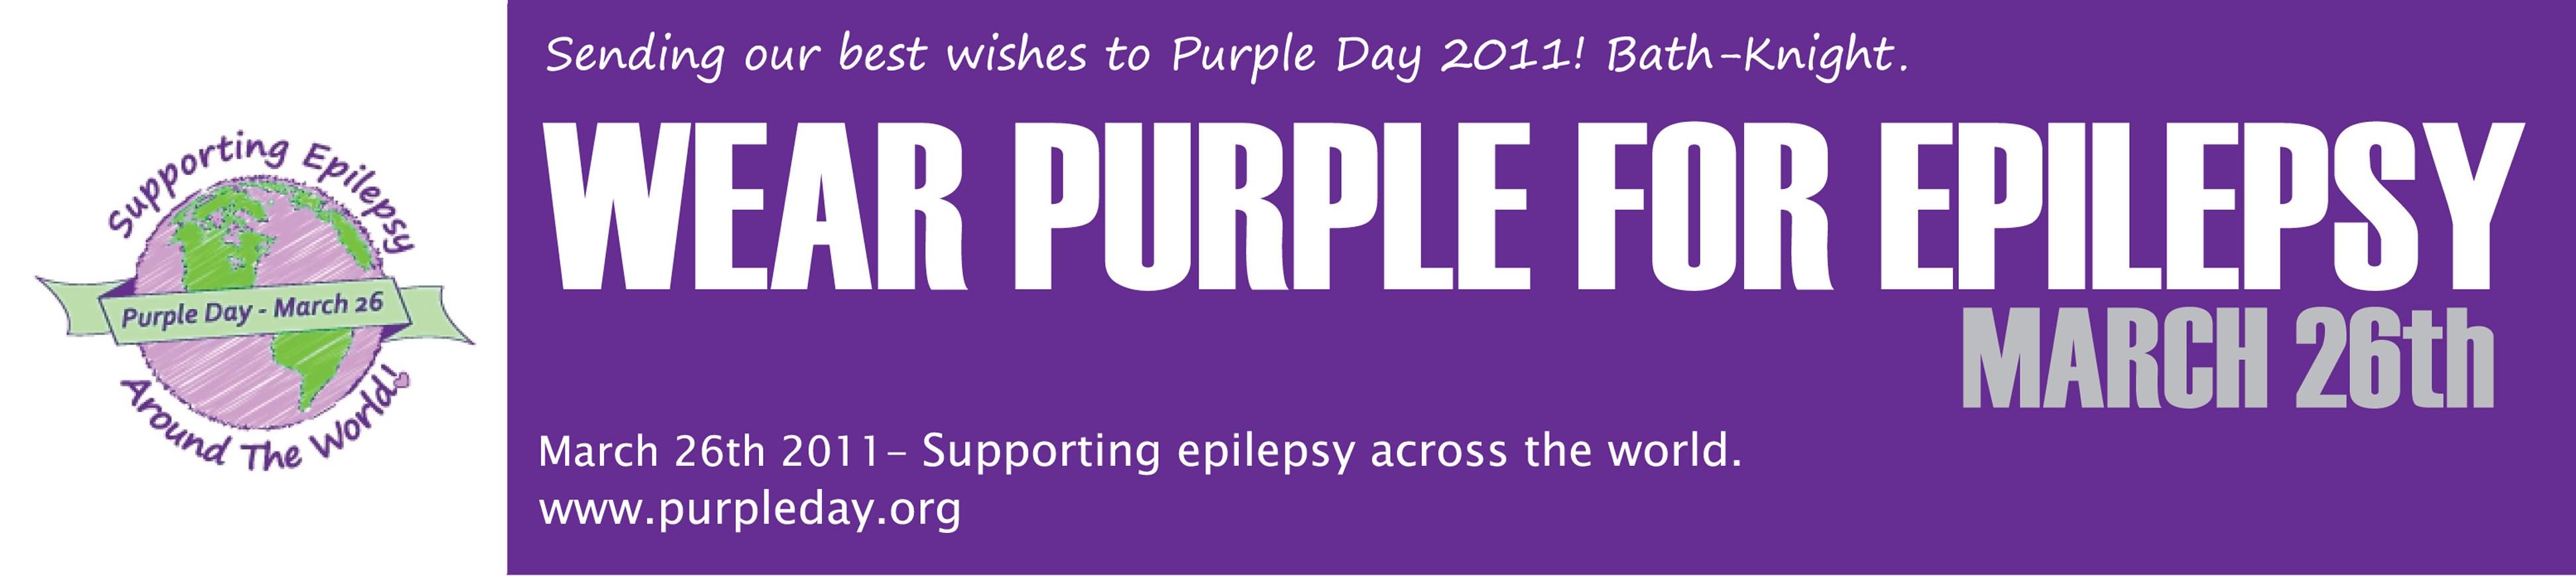 Wear Purple For Epilepsy March 26th Happy Purple Day